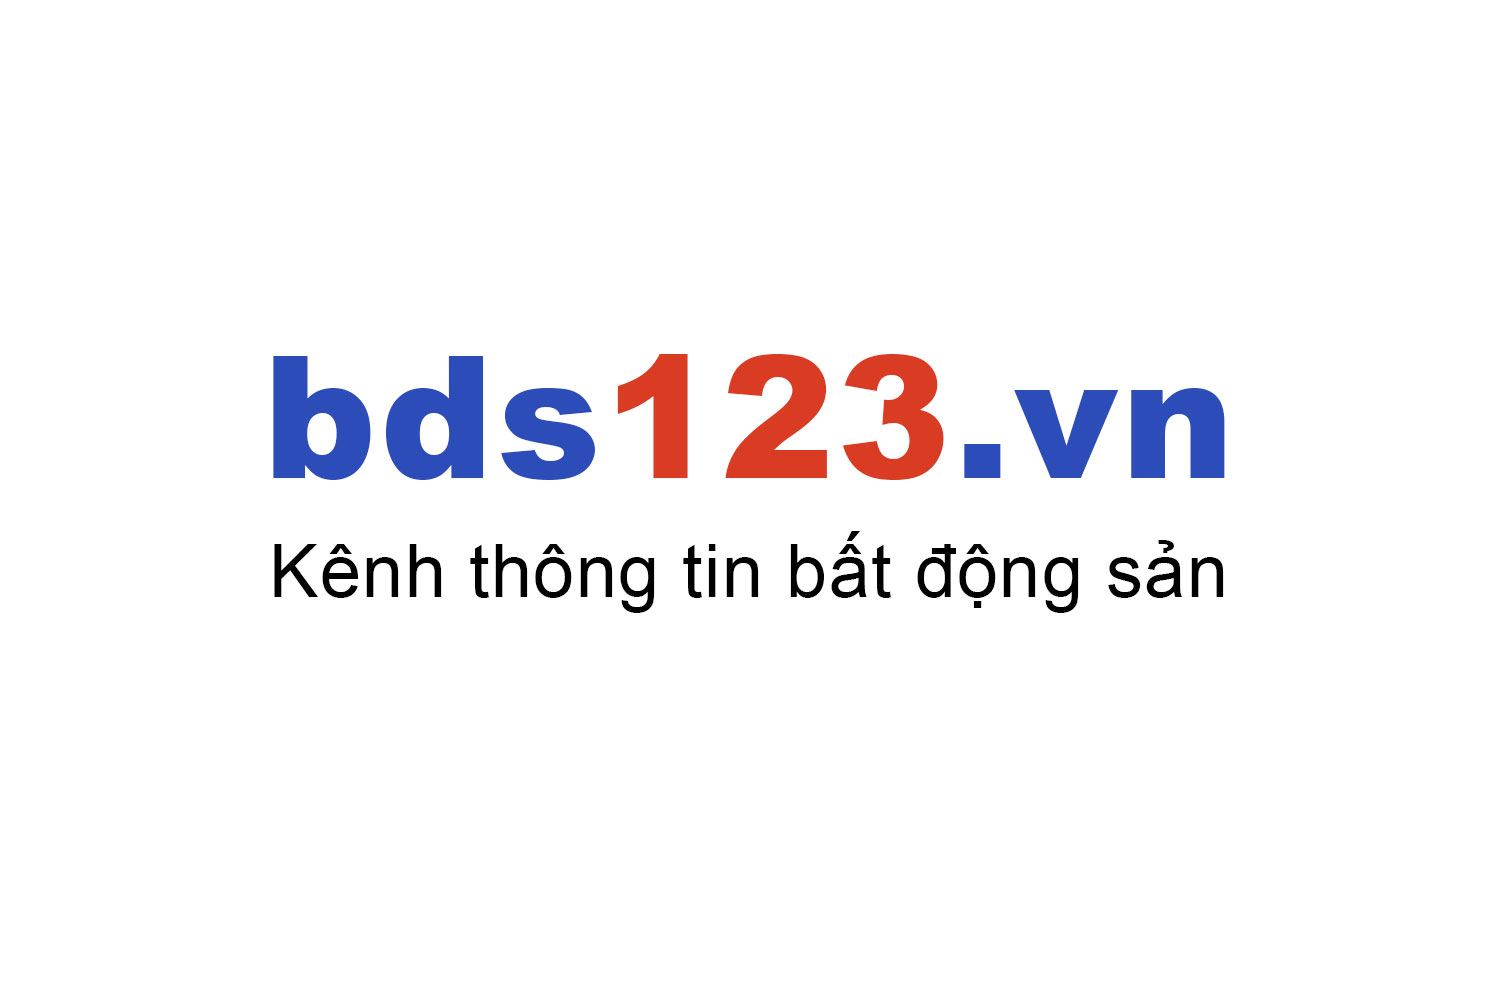 Mua bán chung cư B6 Giảng Võ ưu đãi giá tốt T10/2022 - Bds123.vn